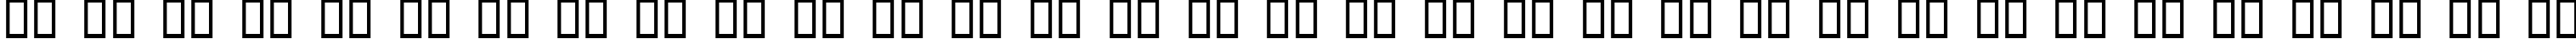 Пример написания русского алфавита шрифтом Ninja Penguin